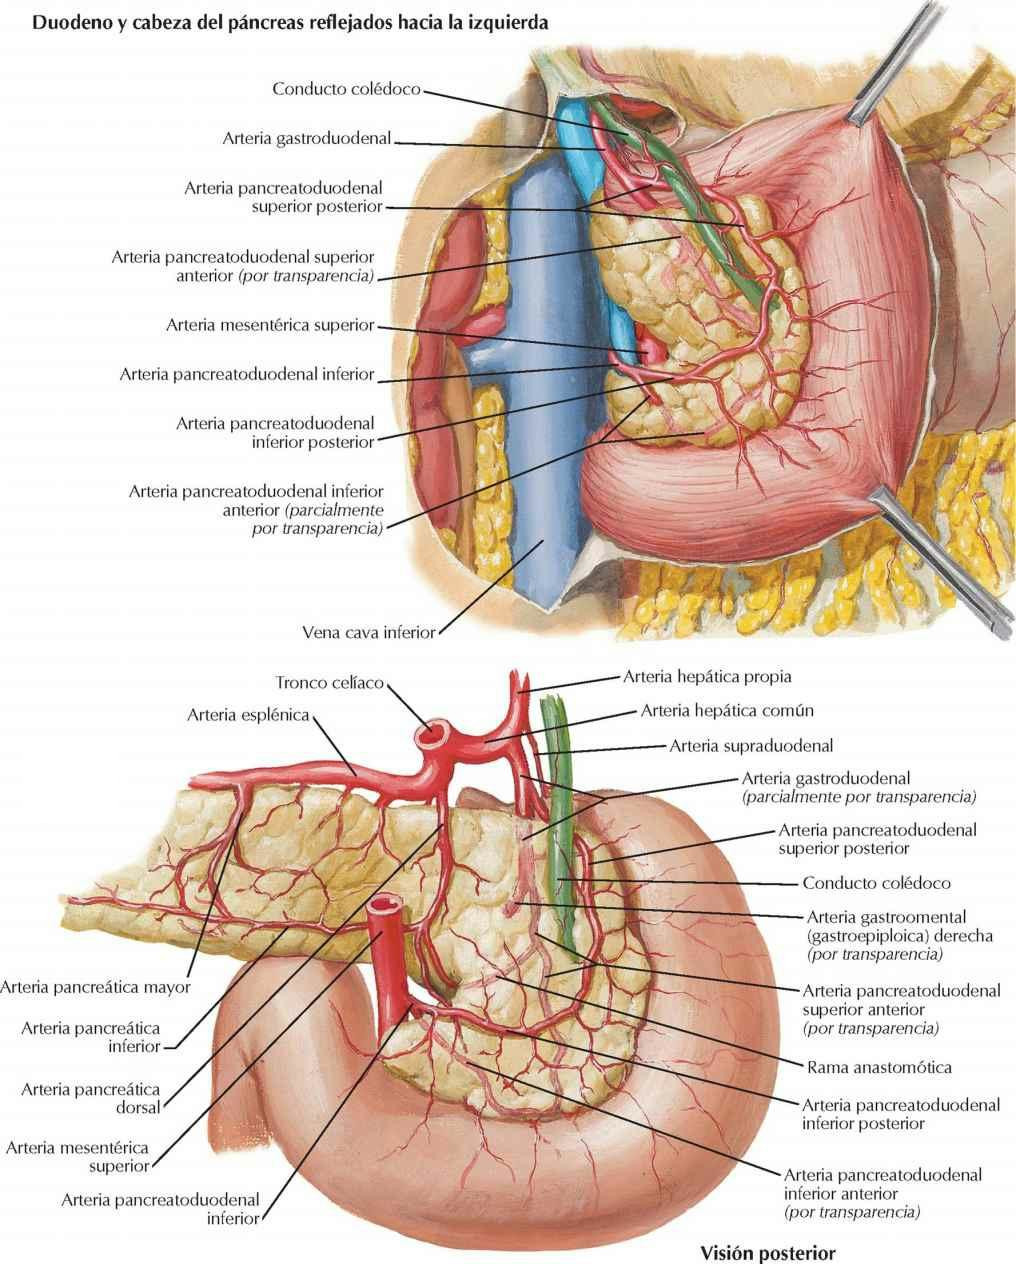 Arterias del duodeno y cabeza del páncreas